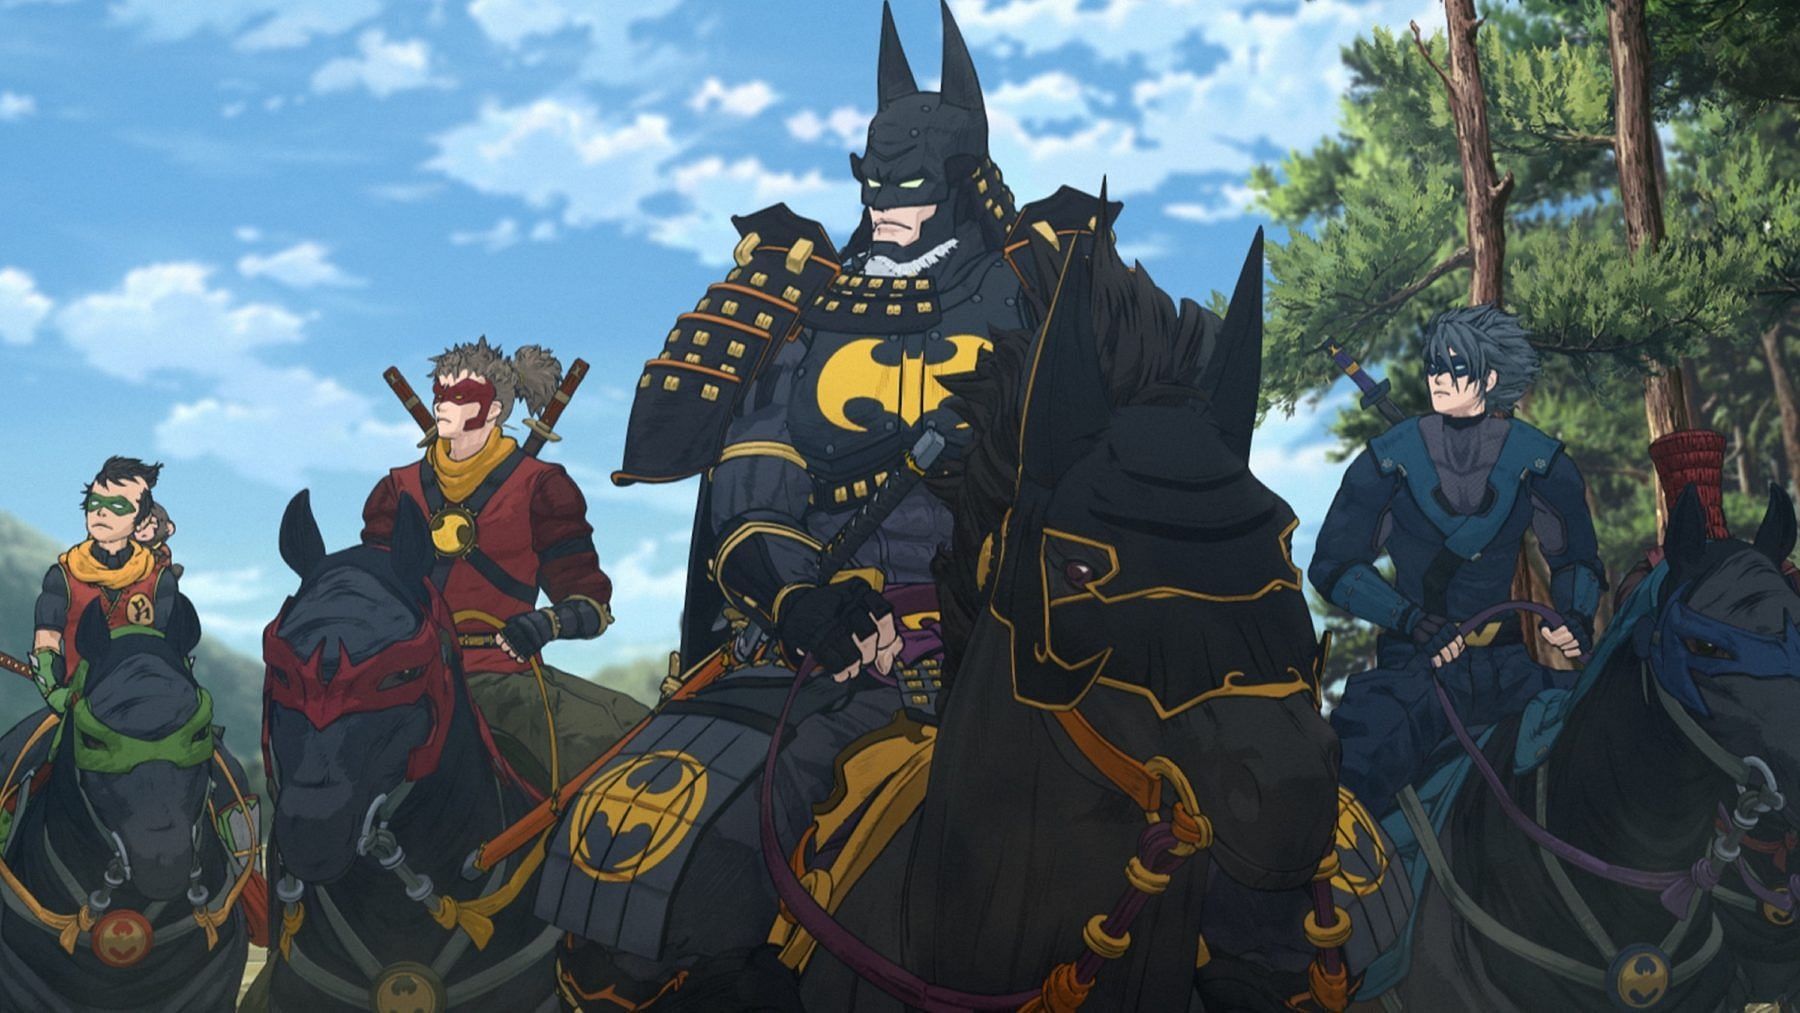 Batman and his sidekicks as seen in the movie (Image via Warner Bros. Japan)